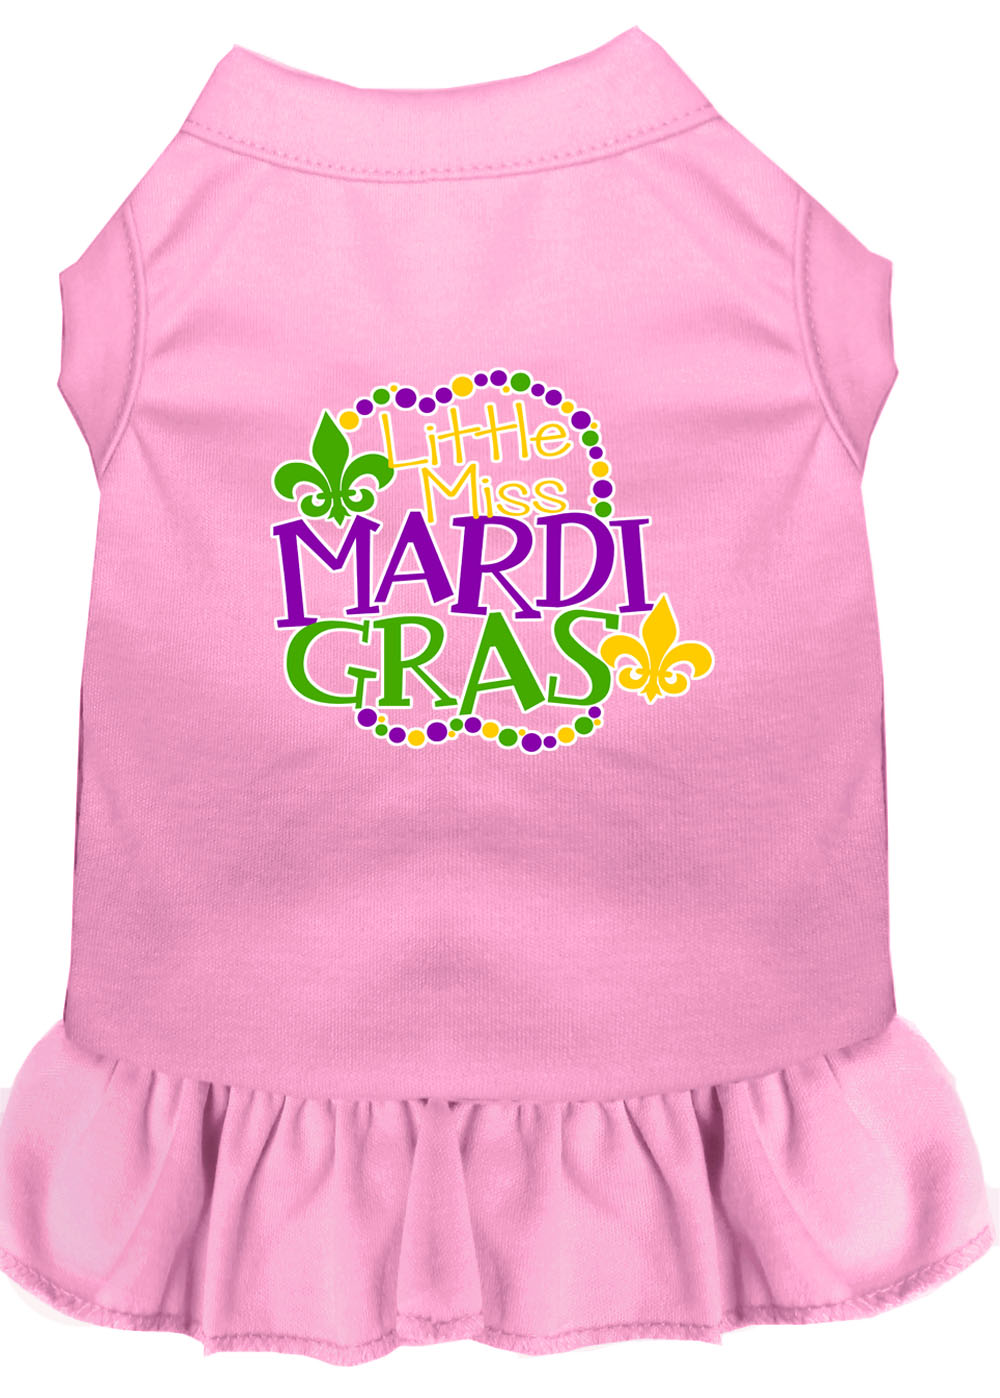 Miss Mardi Gras Screen Print Mardi Gras Dog Dress Light Pink 4X